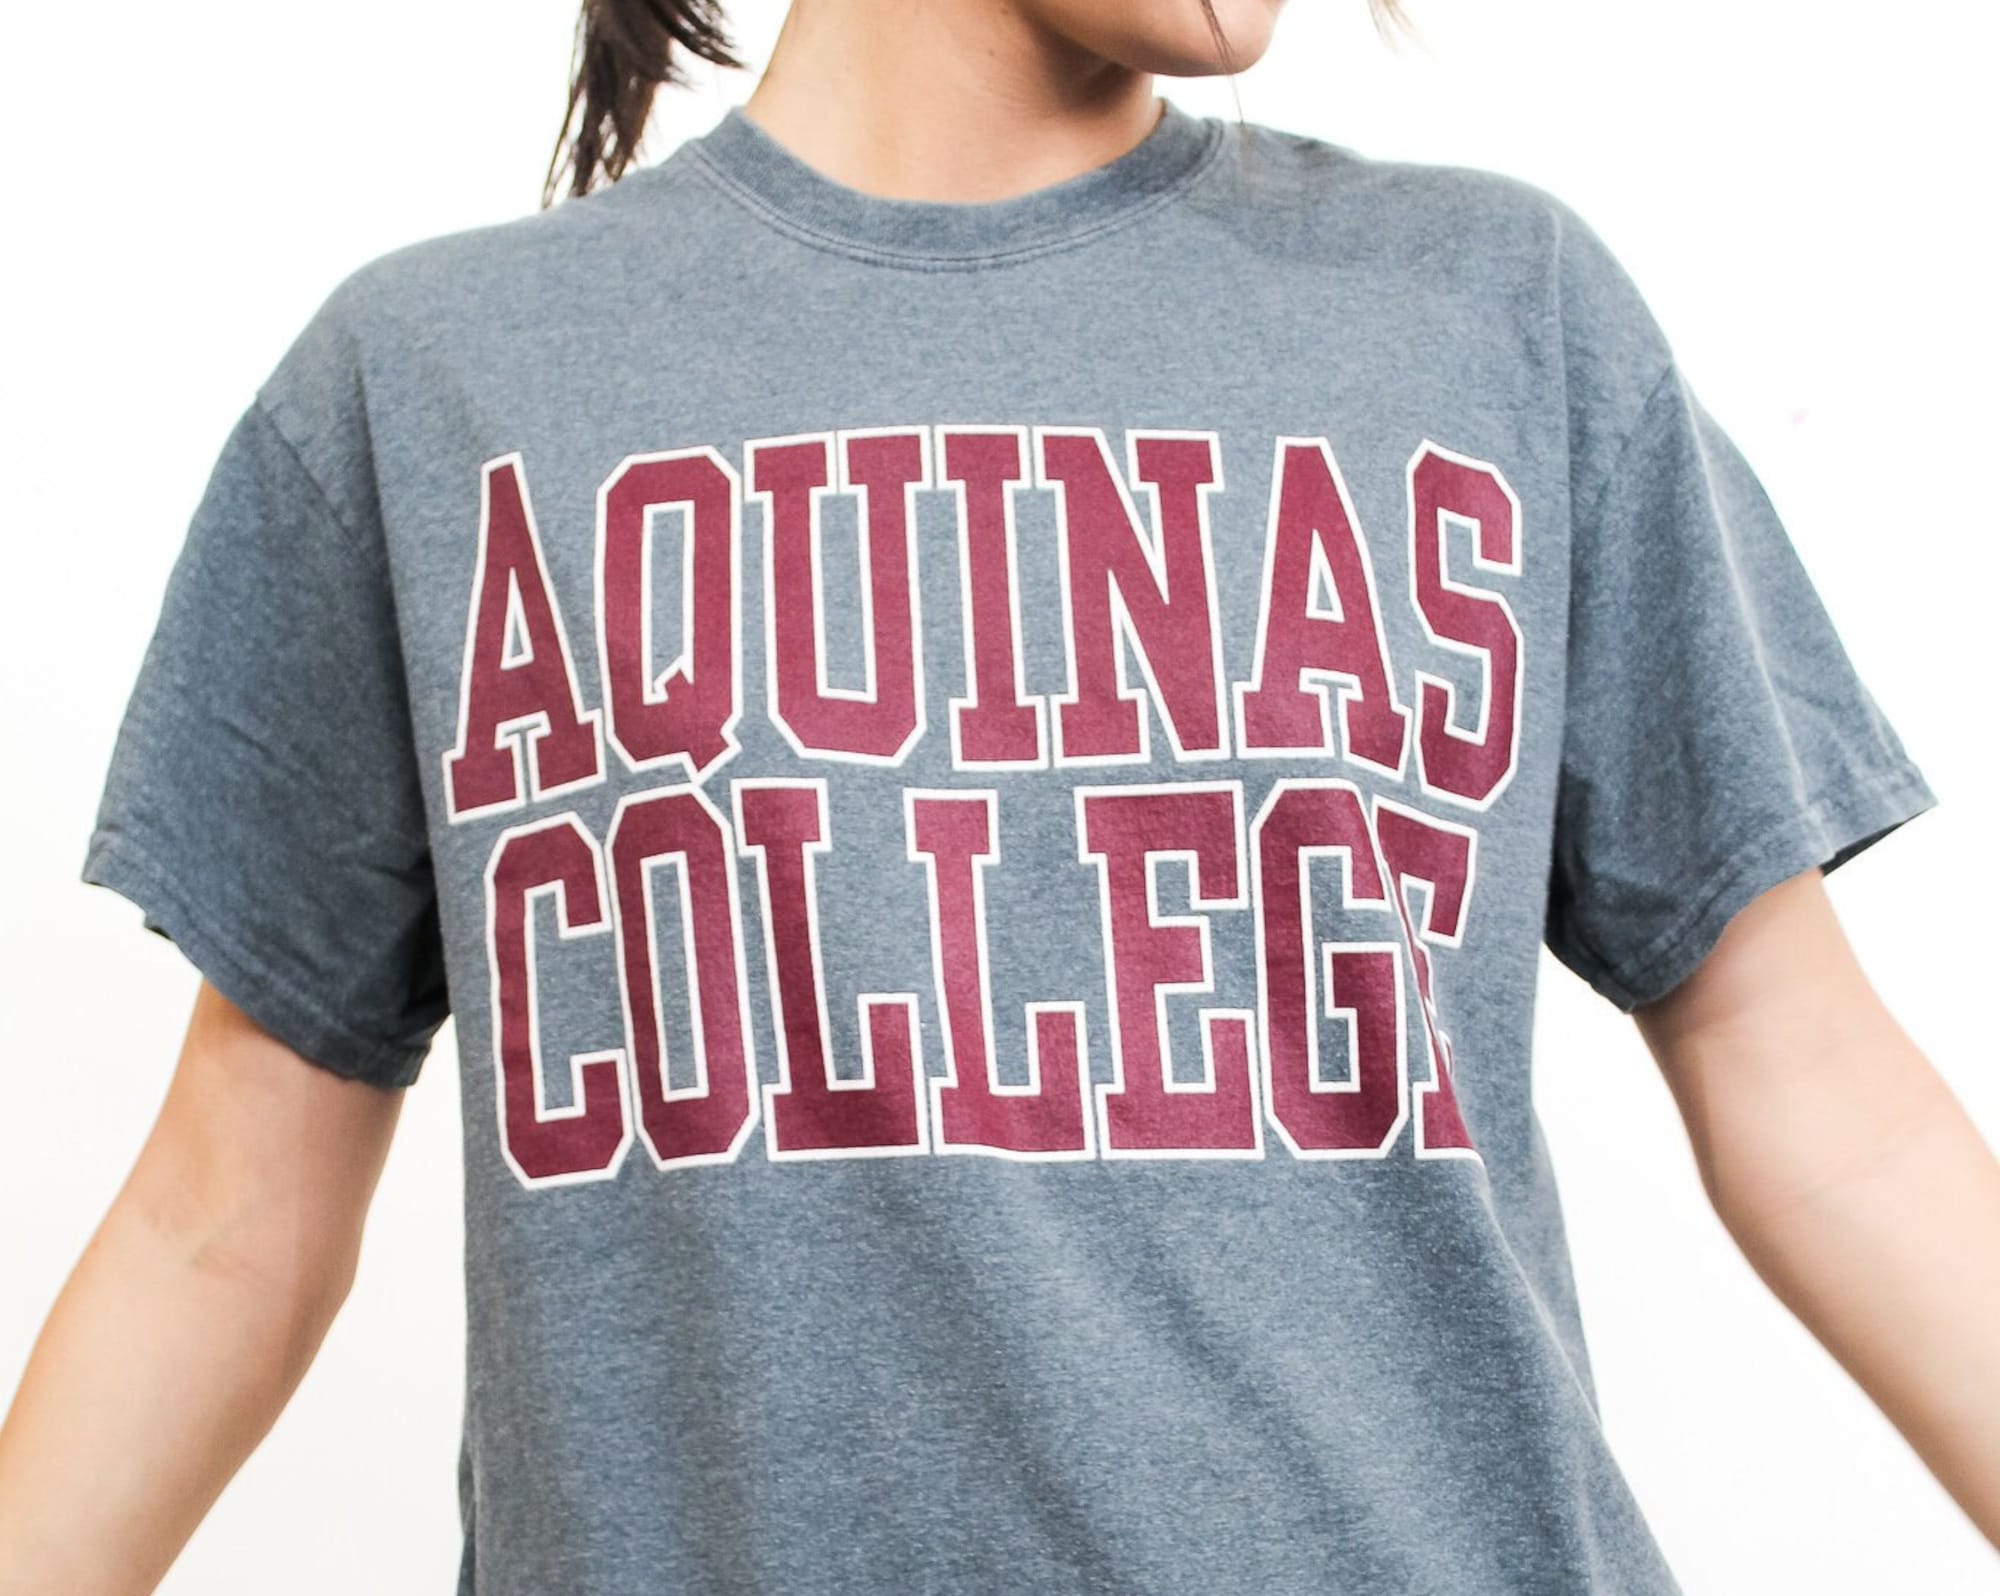 Discover Aquinas College Tee